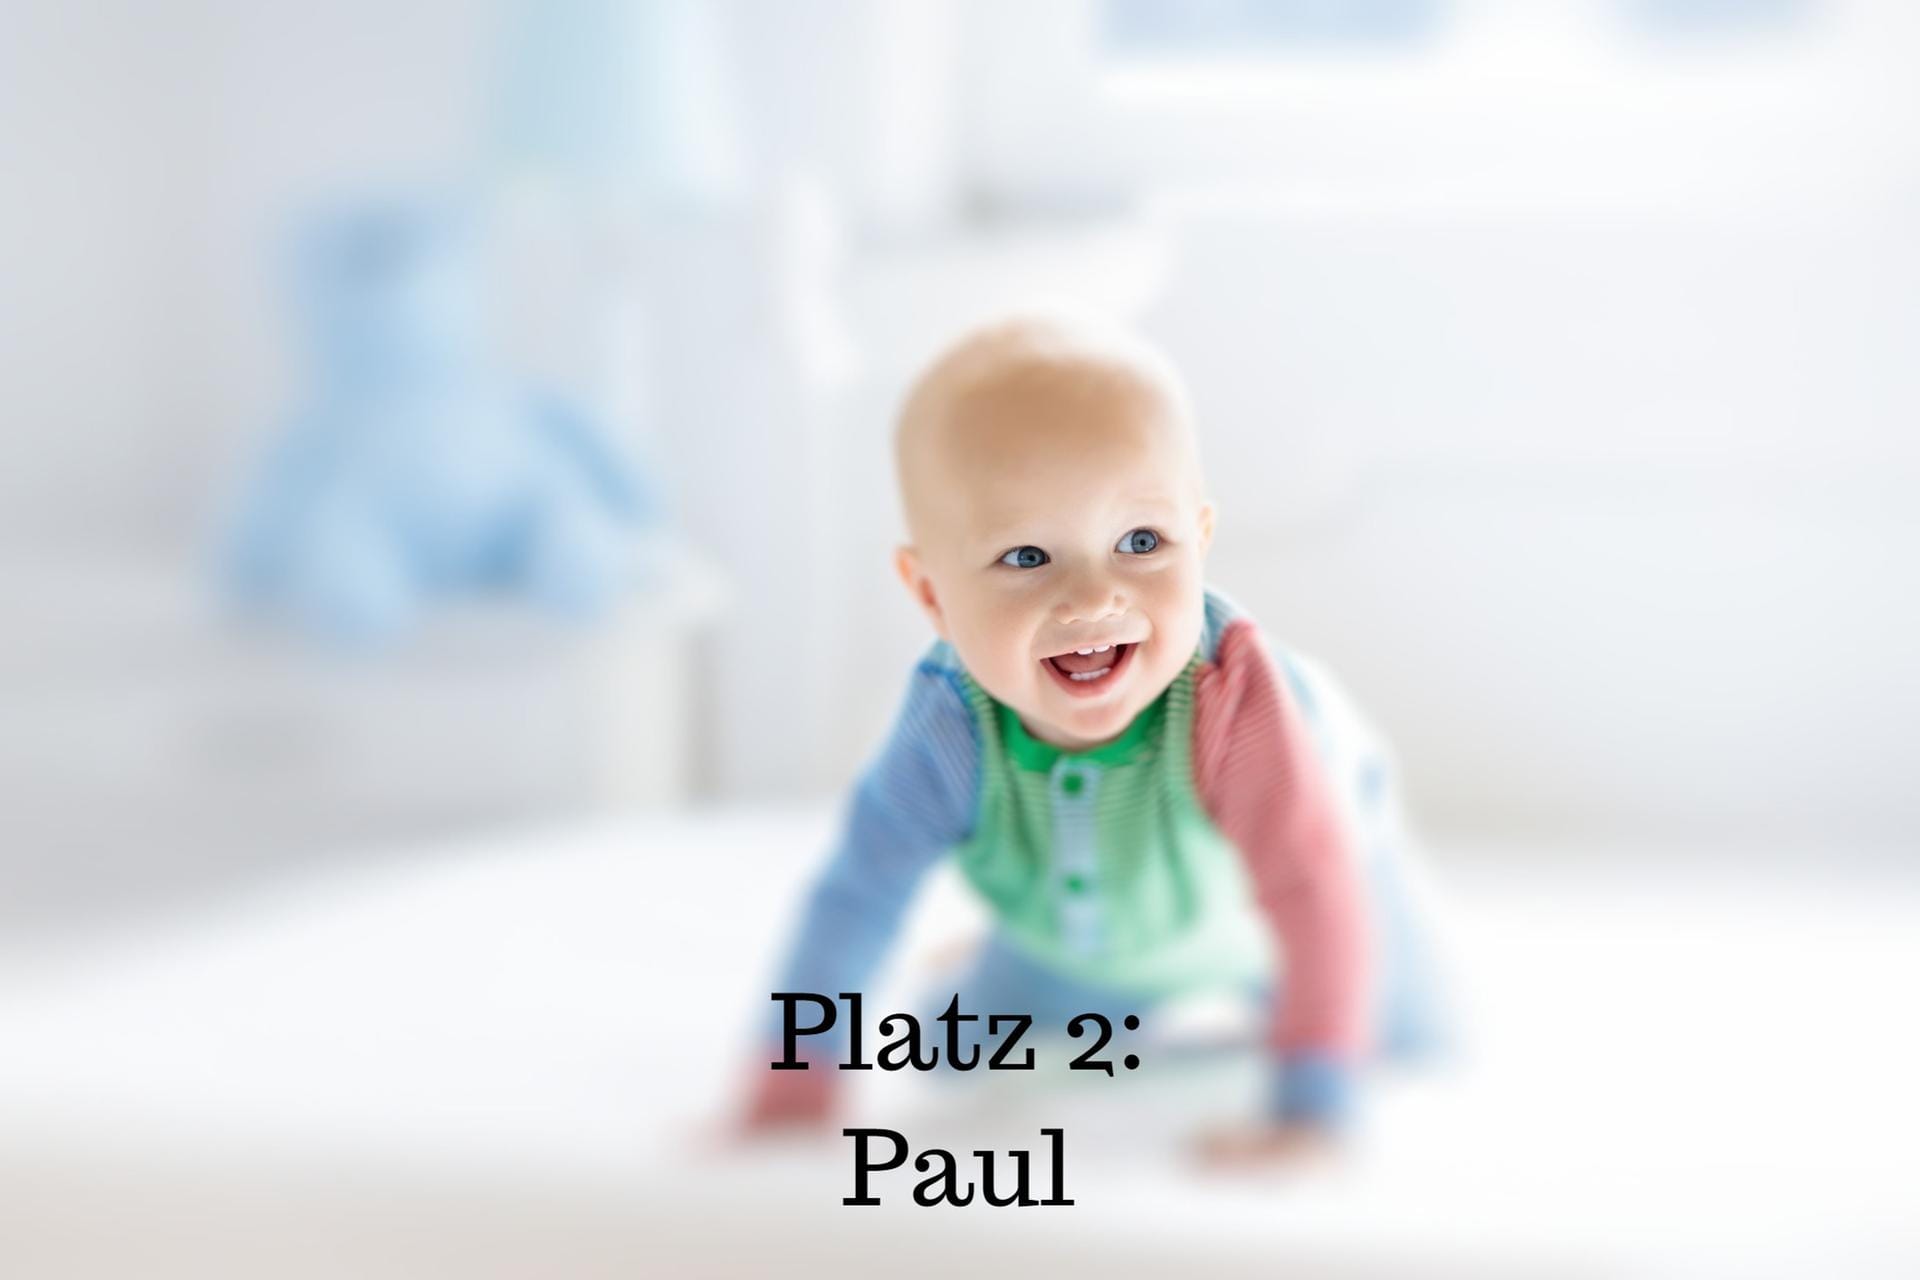 Platz 2: Paul – Der Name geht auf den lateinischen Namen Paulus zurück und bedeutet "der Kleine".